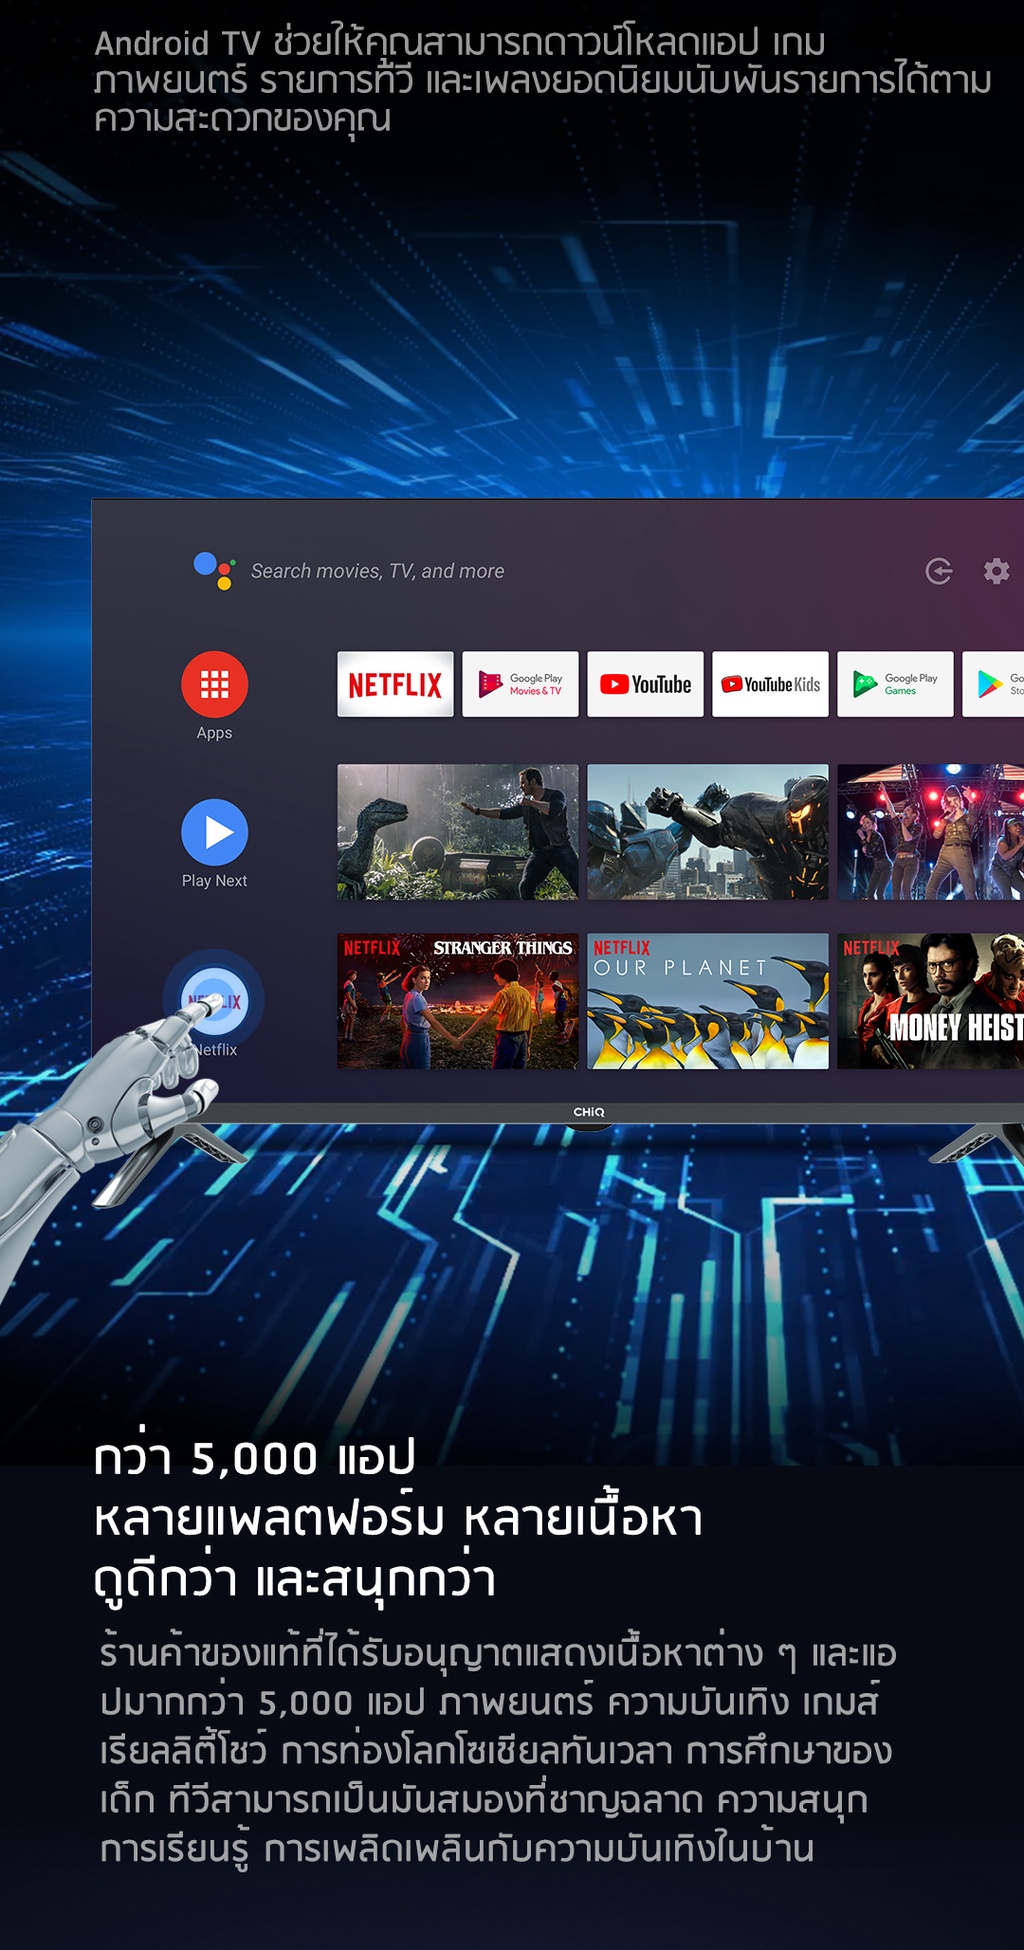 ข้อมูลประกอบของ CHiQ Android TV 43 นิ้ว ทีวี การออกแบบแบบไร้กรอบ โทรทัศน HDR10 Google Assistant Dolby Audio สมาร์ททีวี L43M8T